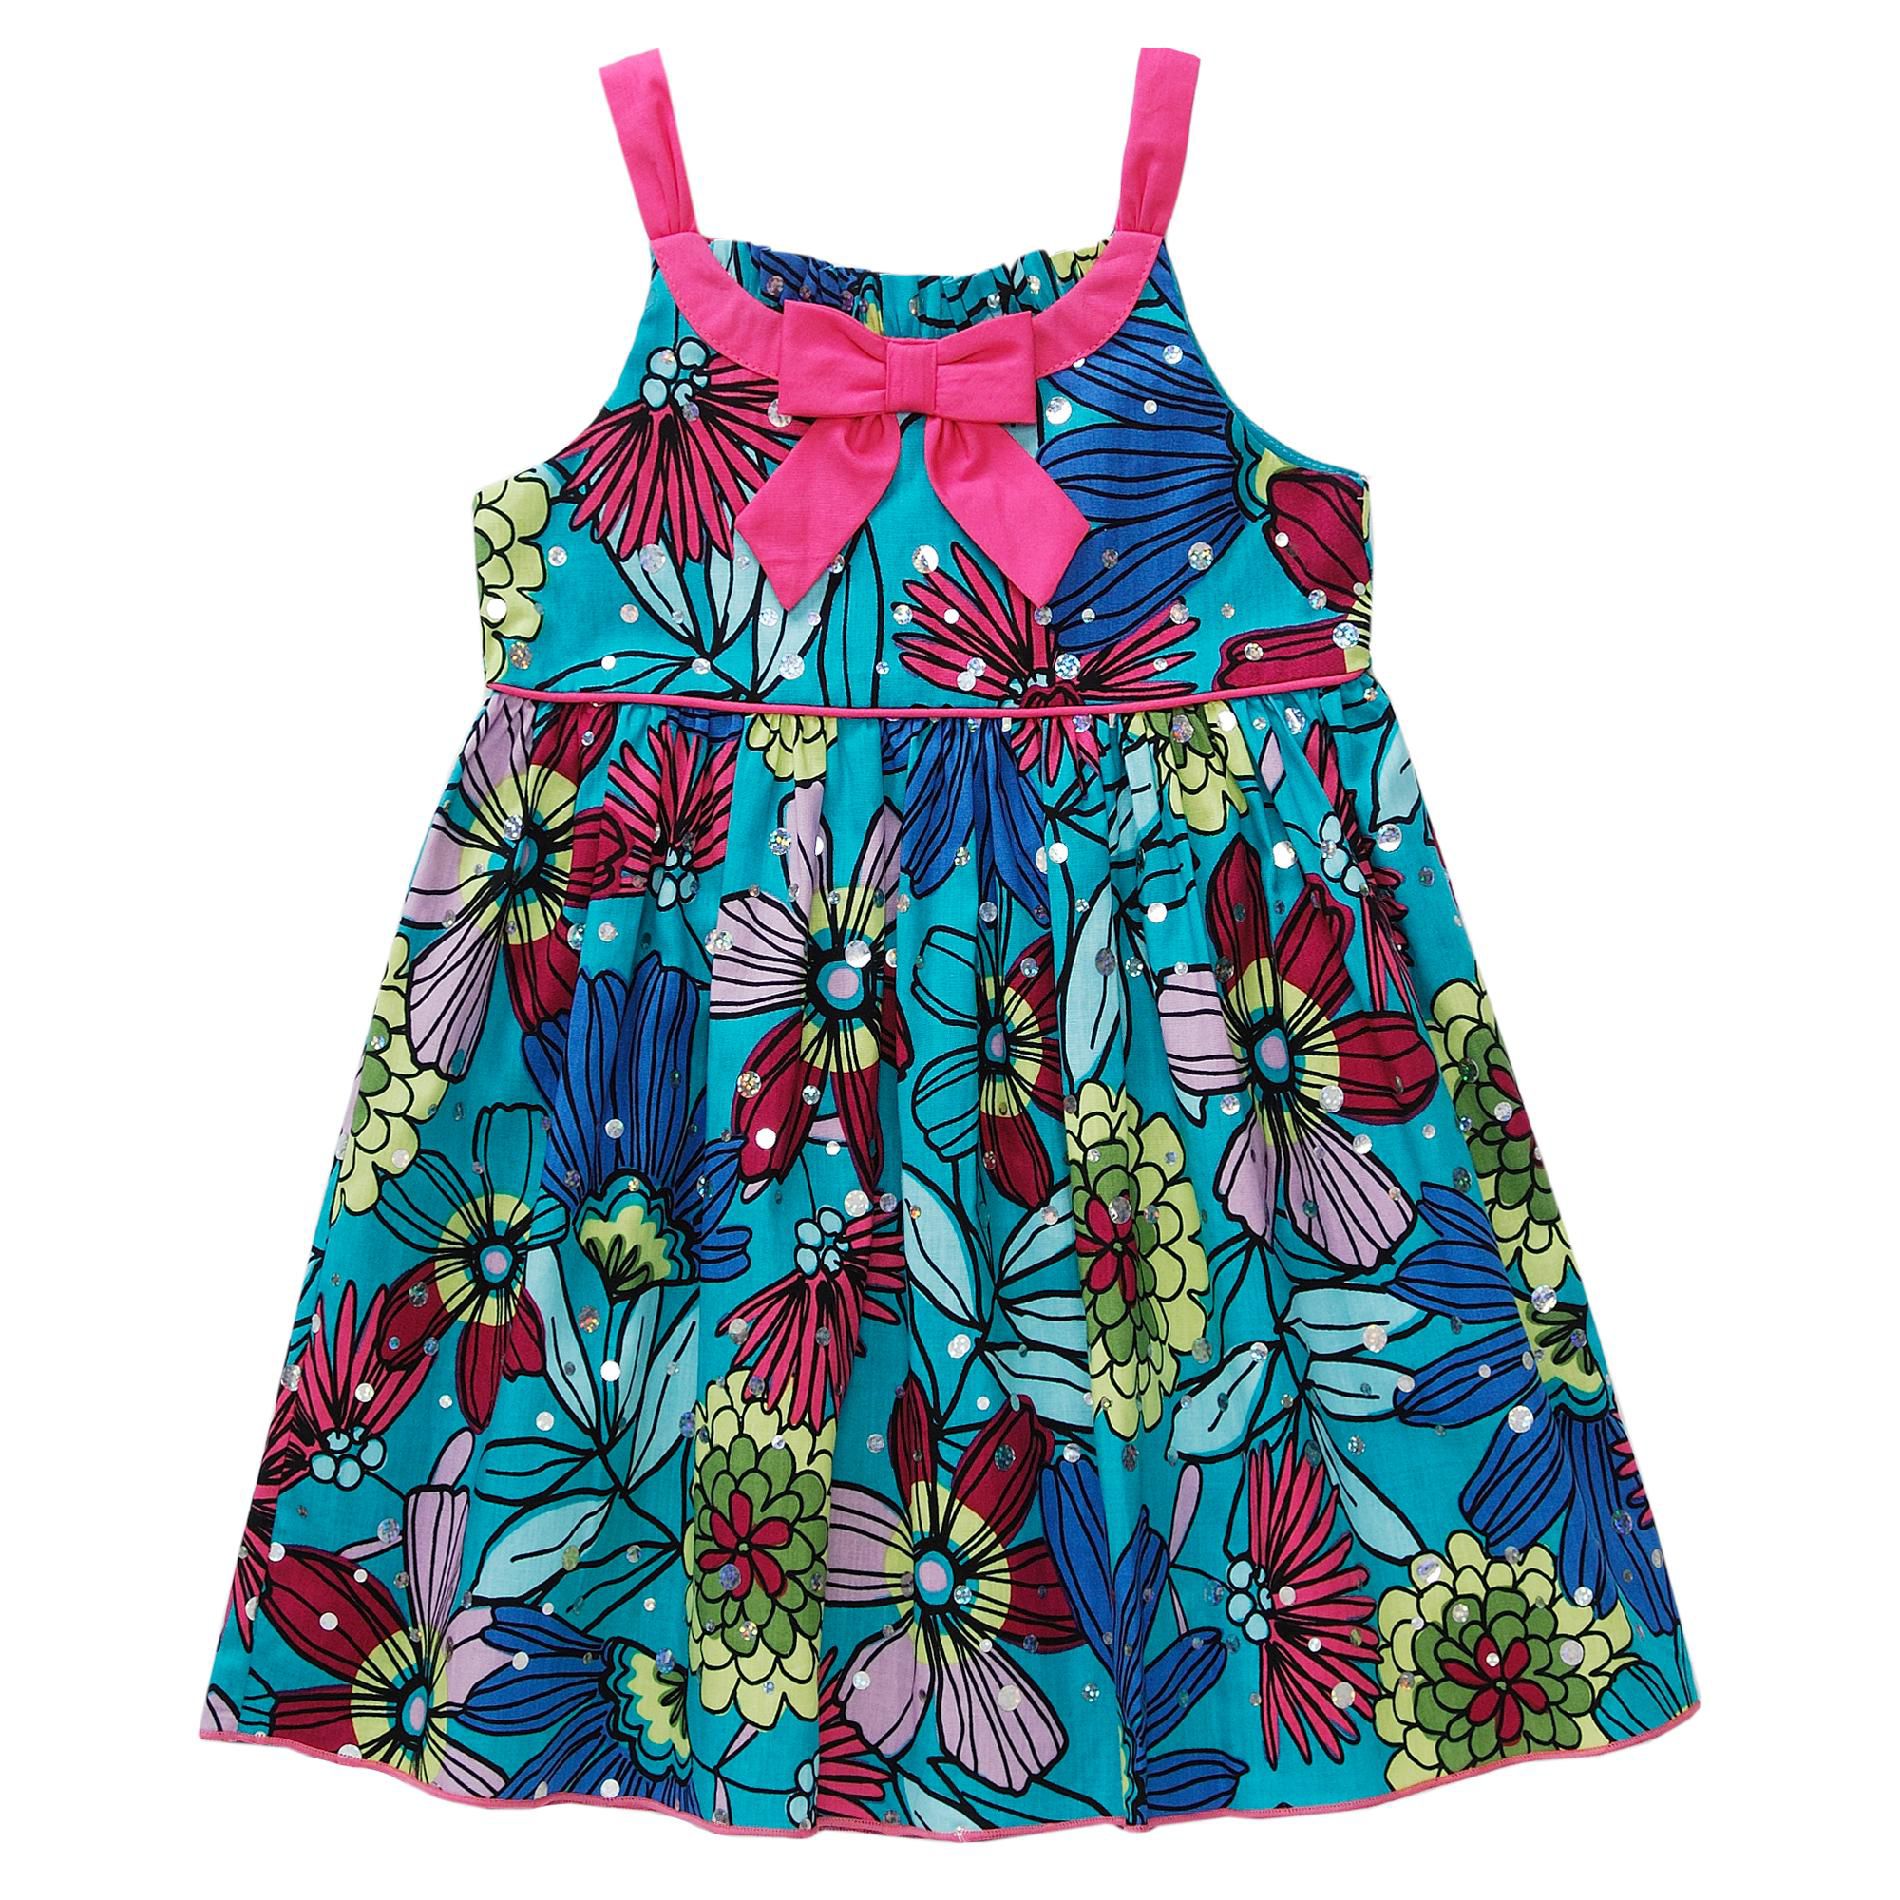 Youngland Girl&#8217;s Infant Dress Hologram 12 Months Floral Teal